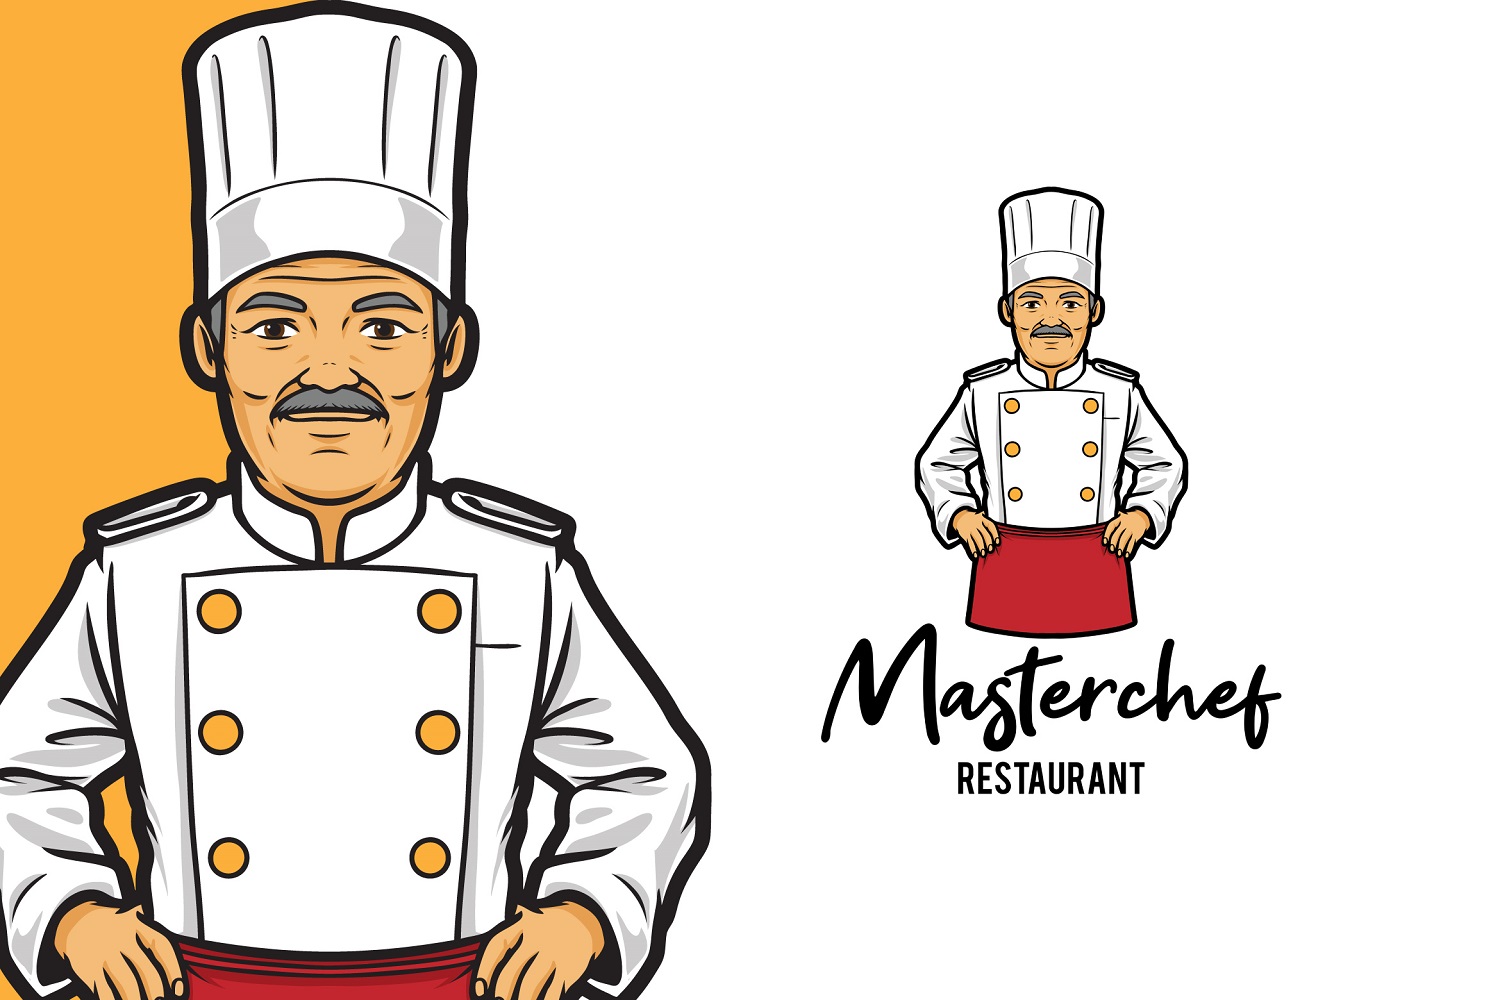 Masterchef Restaurant Logo Template